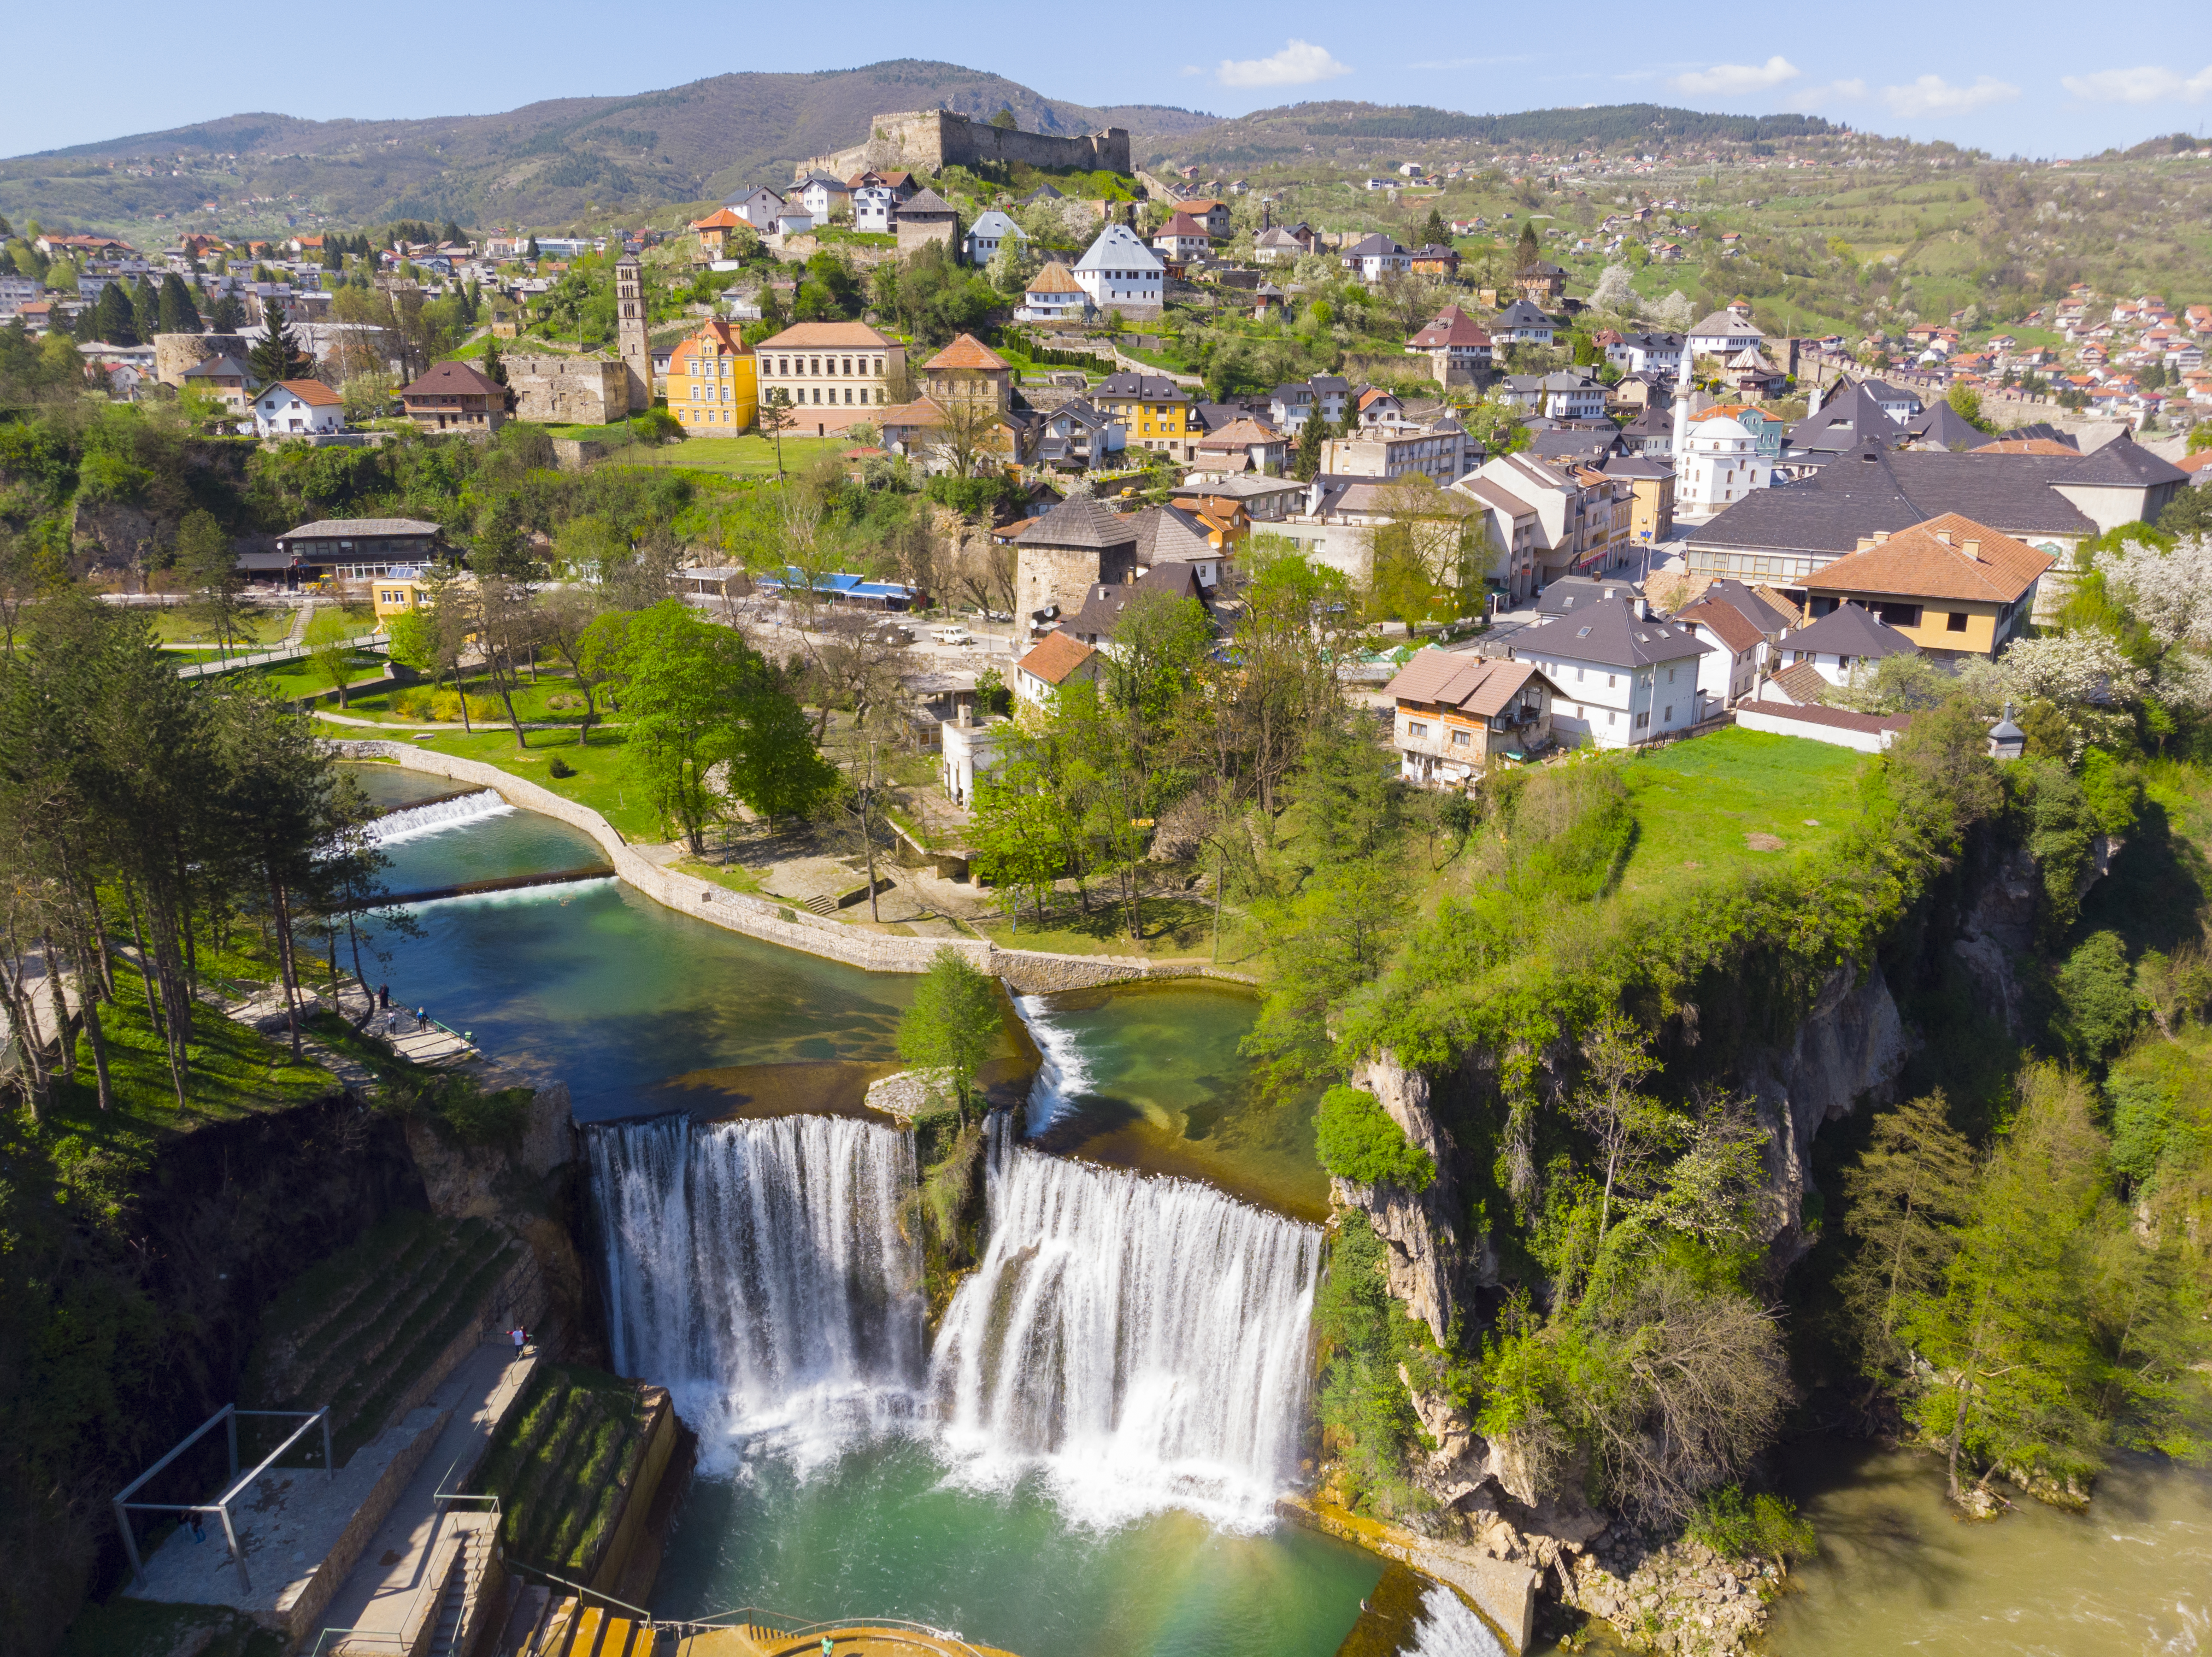 Bosnien Urlaub. Der ultimative Guide für eine Bosnien Reise.